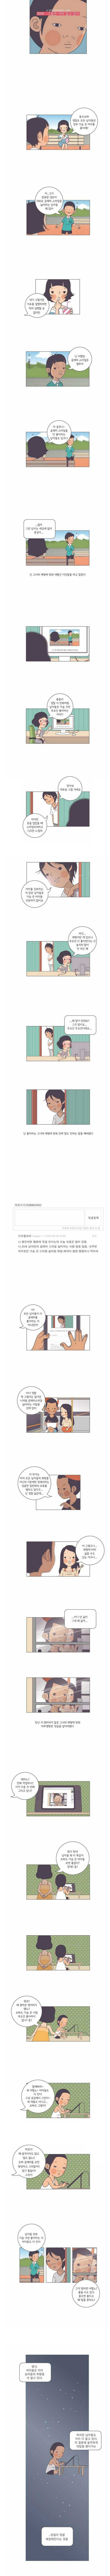 유부남들의 불륜녀 특징.